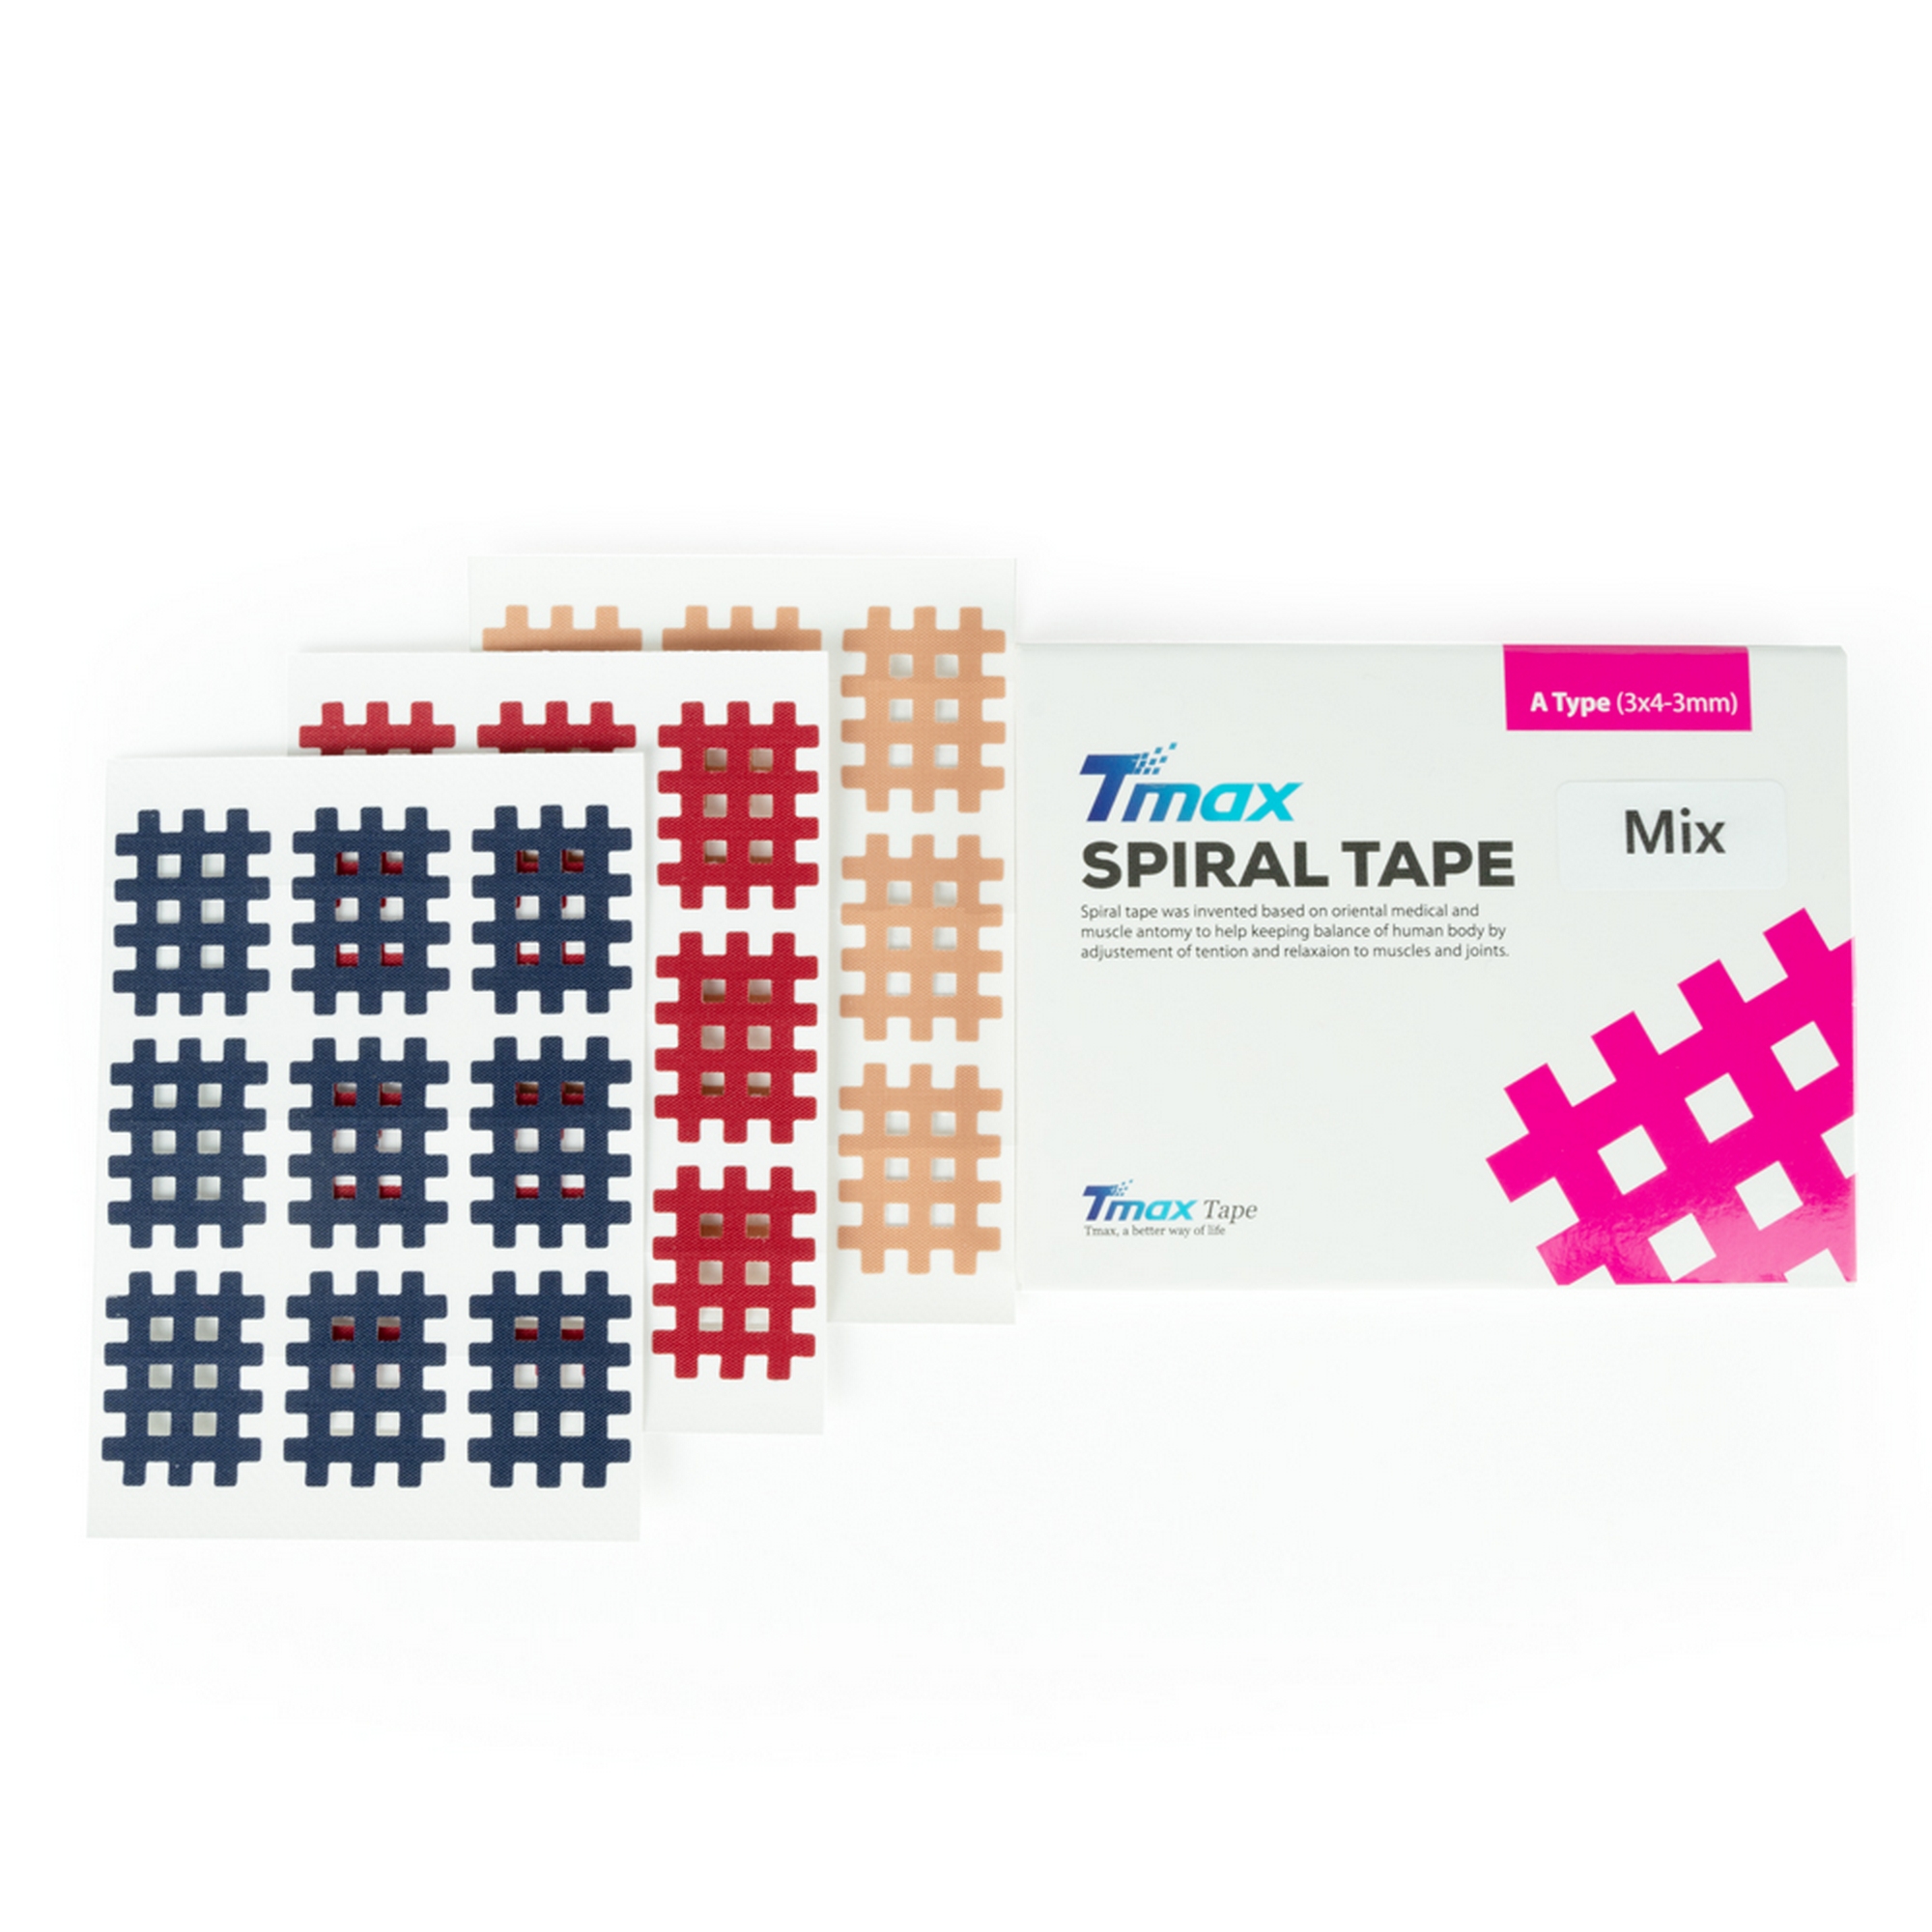 Кросс-тейп Tmax Spiral Tape Type Mix A 423731 3 цвета: синий, красный, телесный (20 листов) 2000_2000